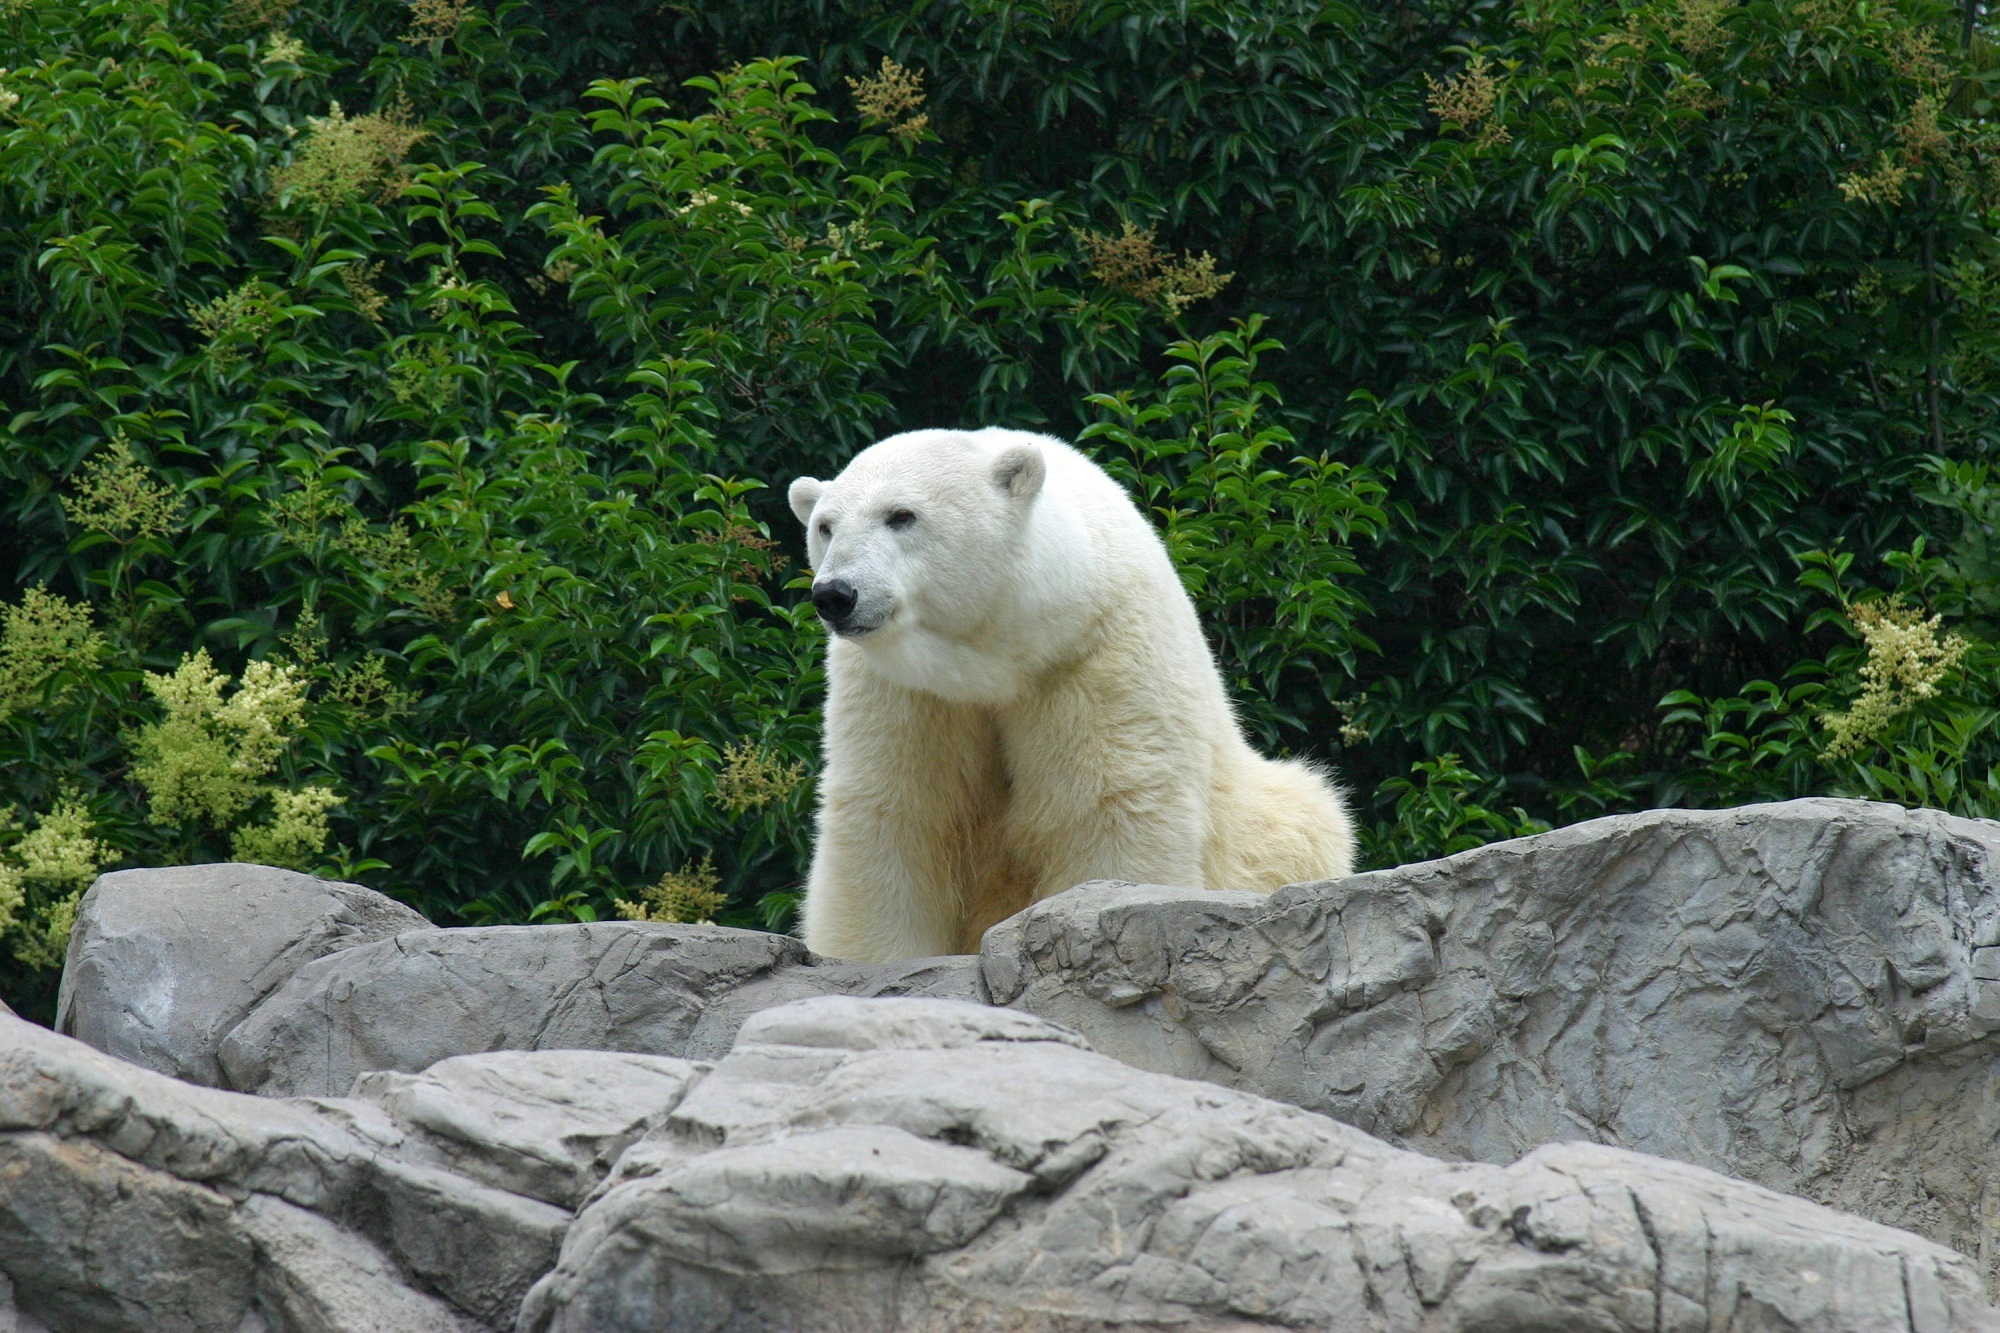 Polar Bear in a zoo by skeeze